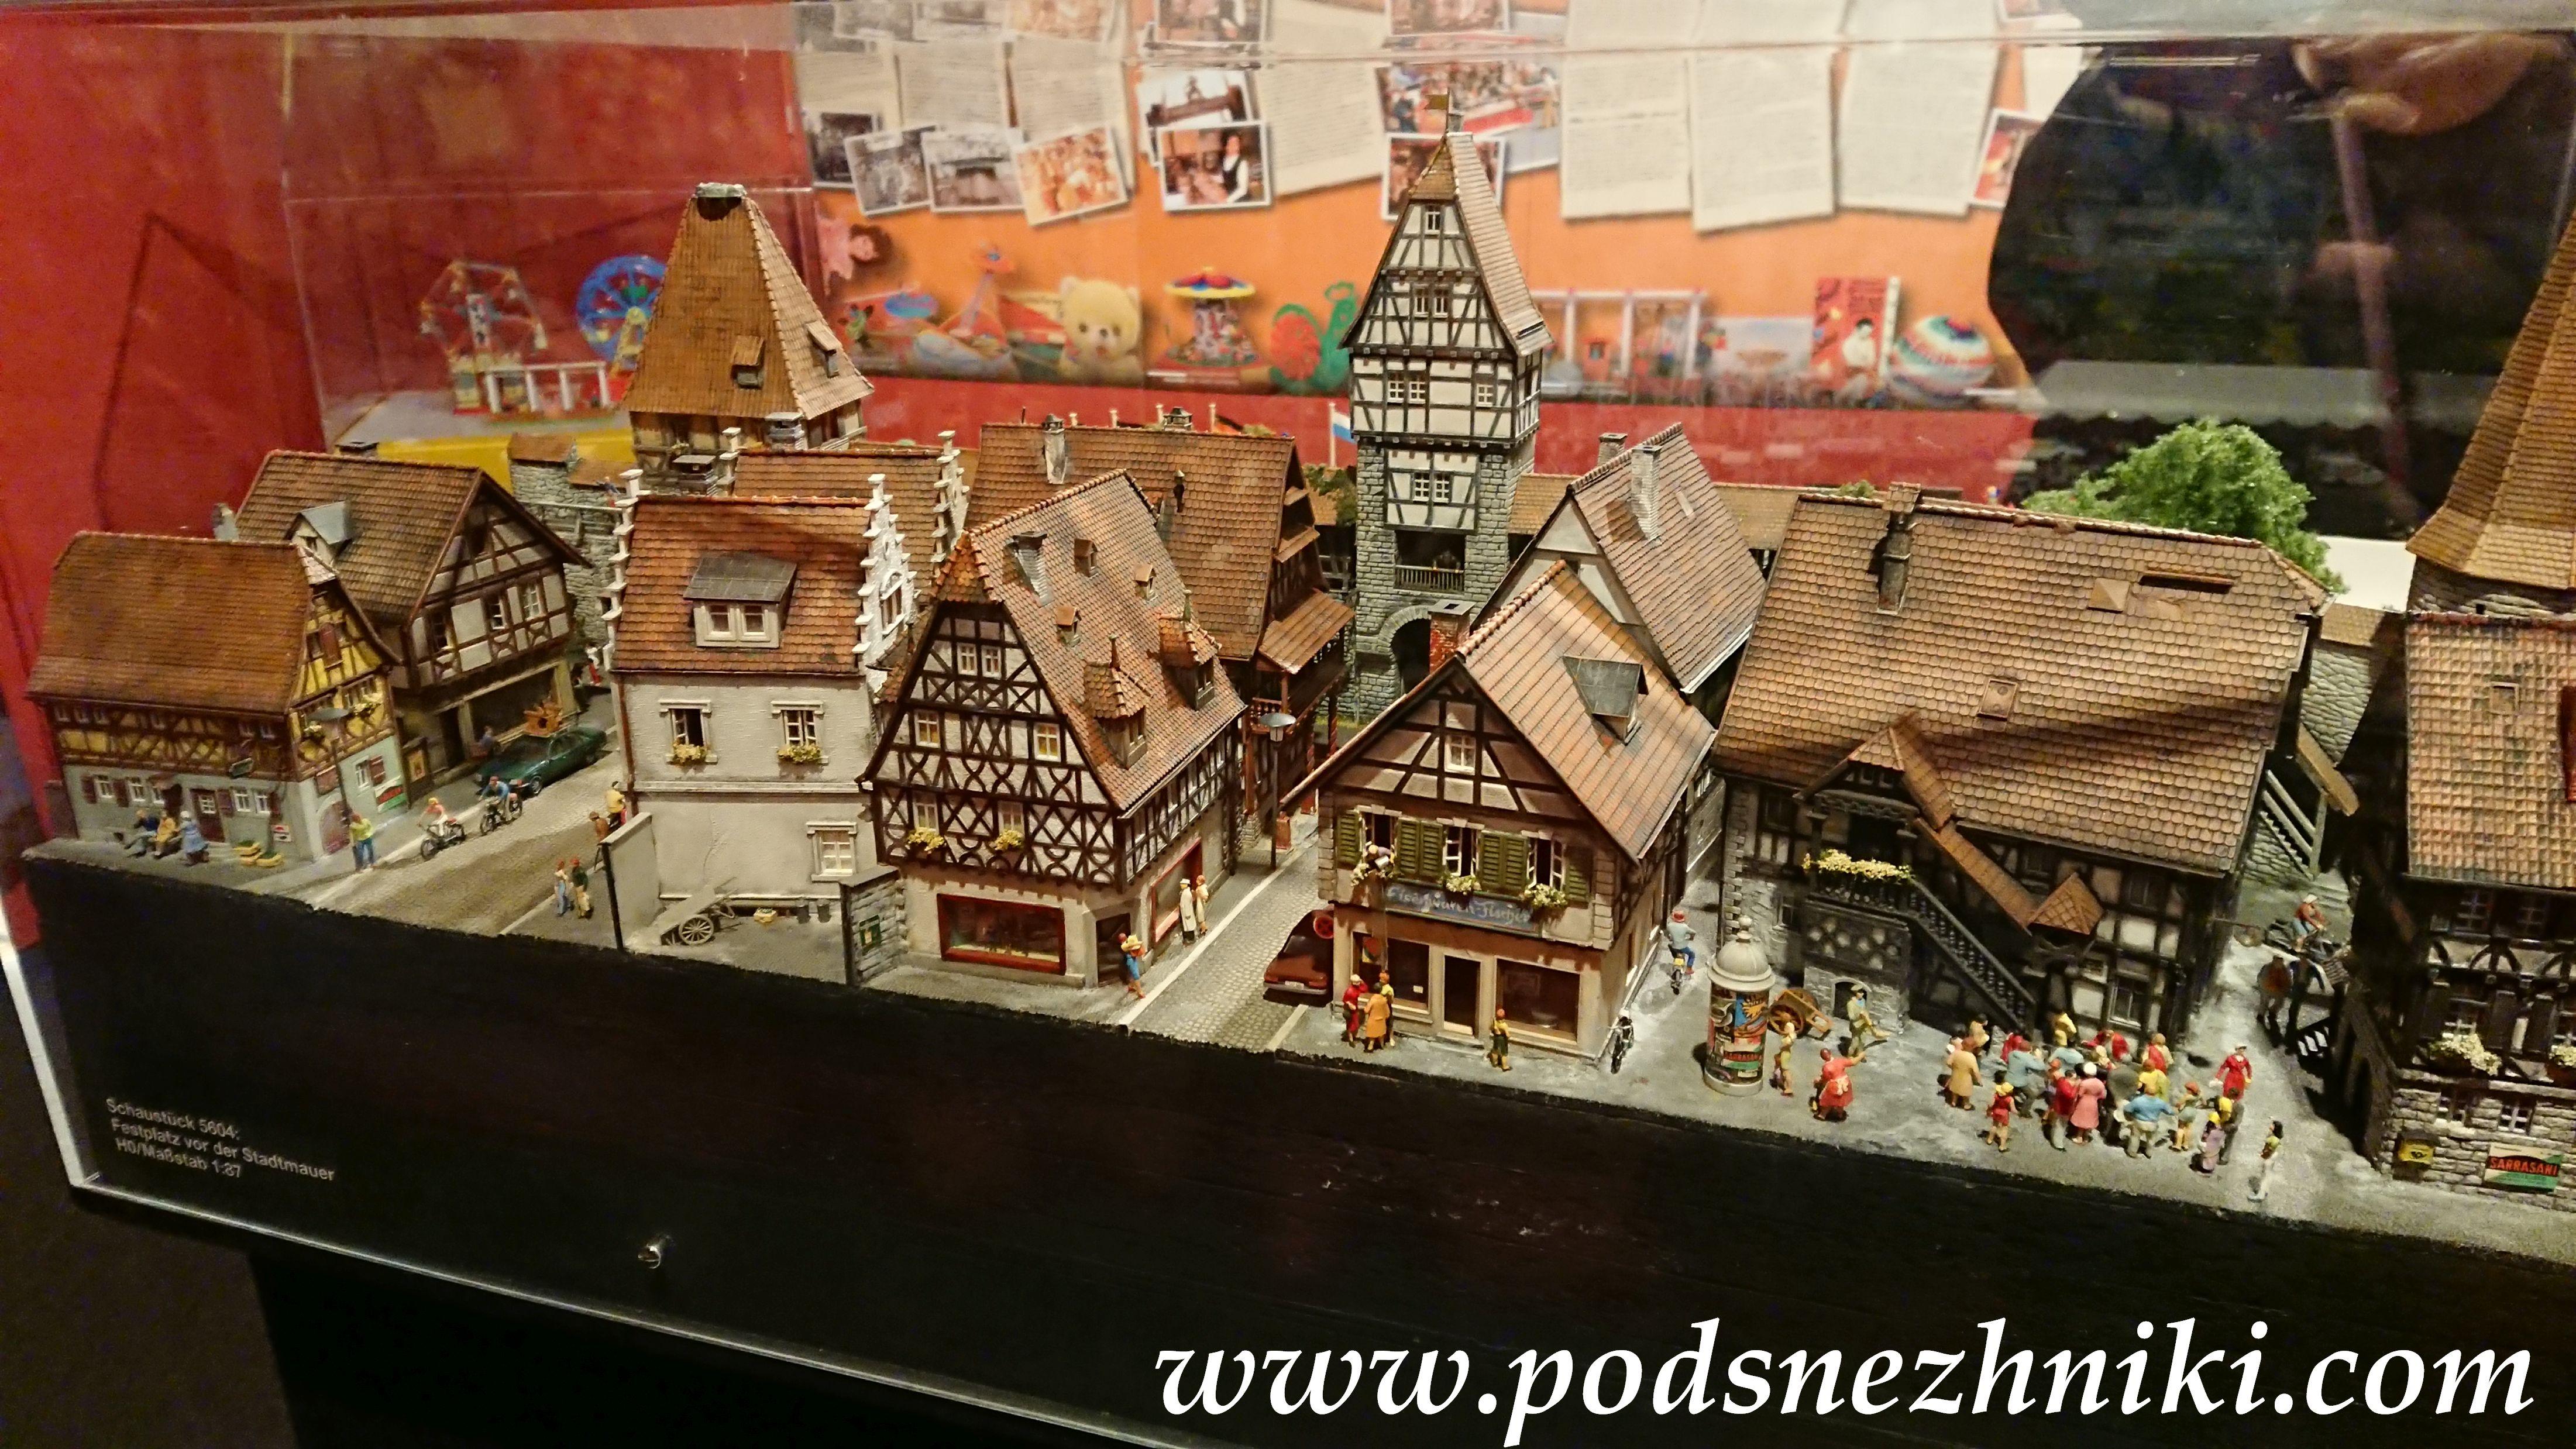 Экскурсия "Кукольное Рождество в Германии"